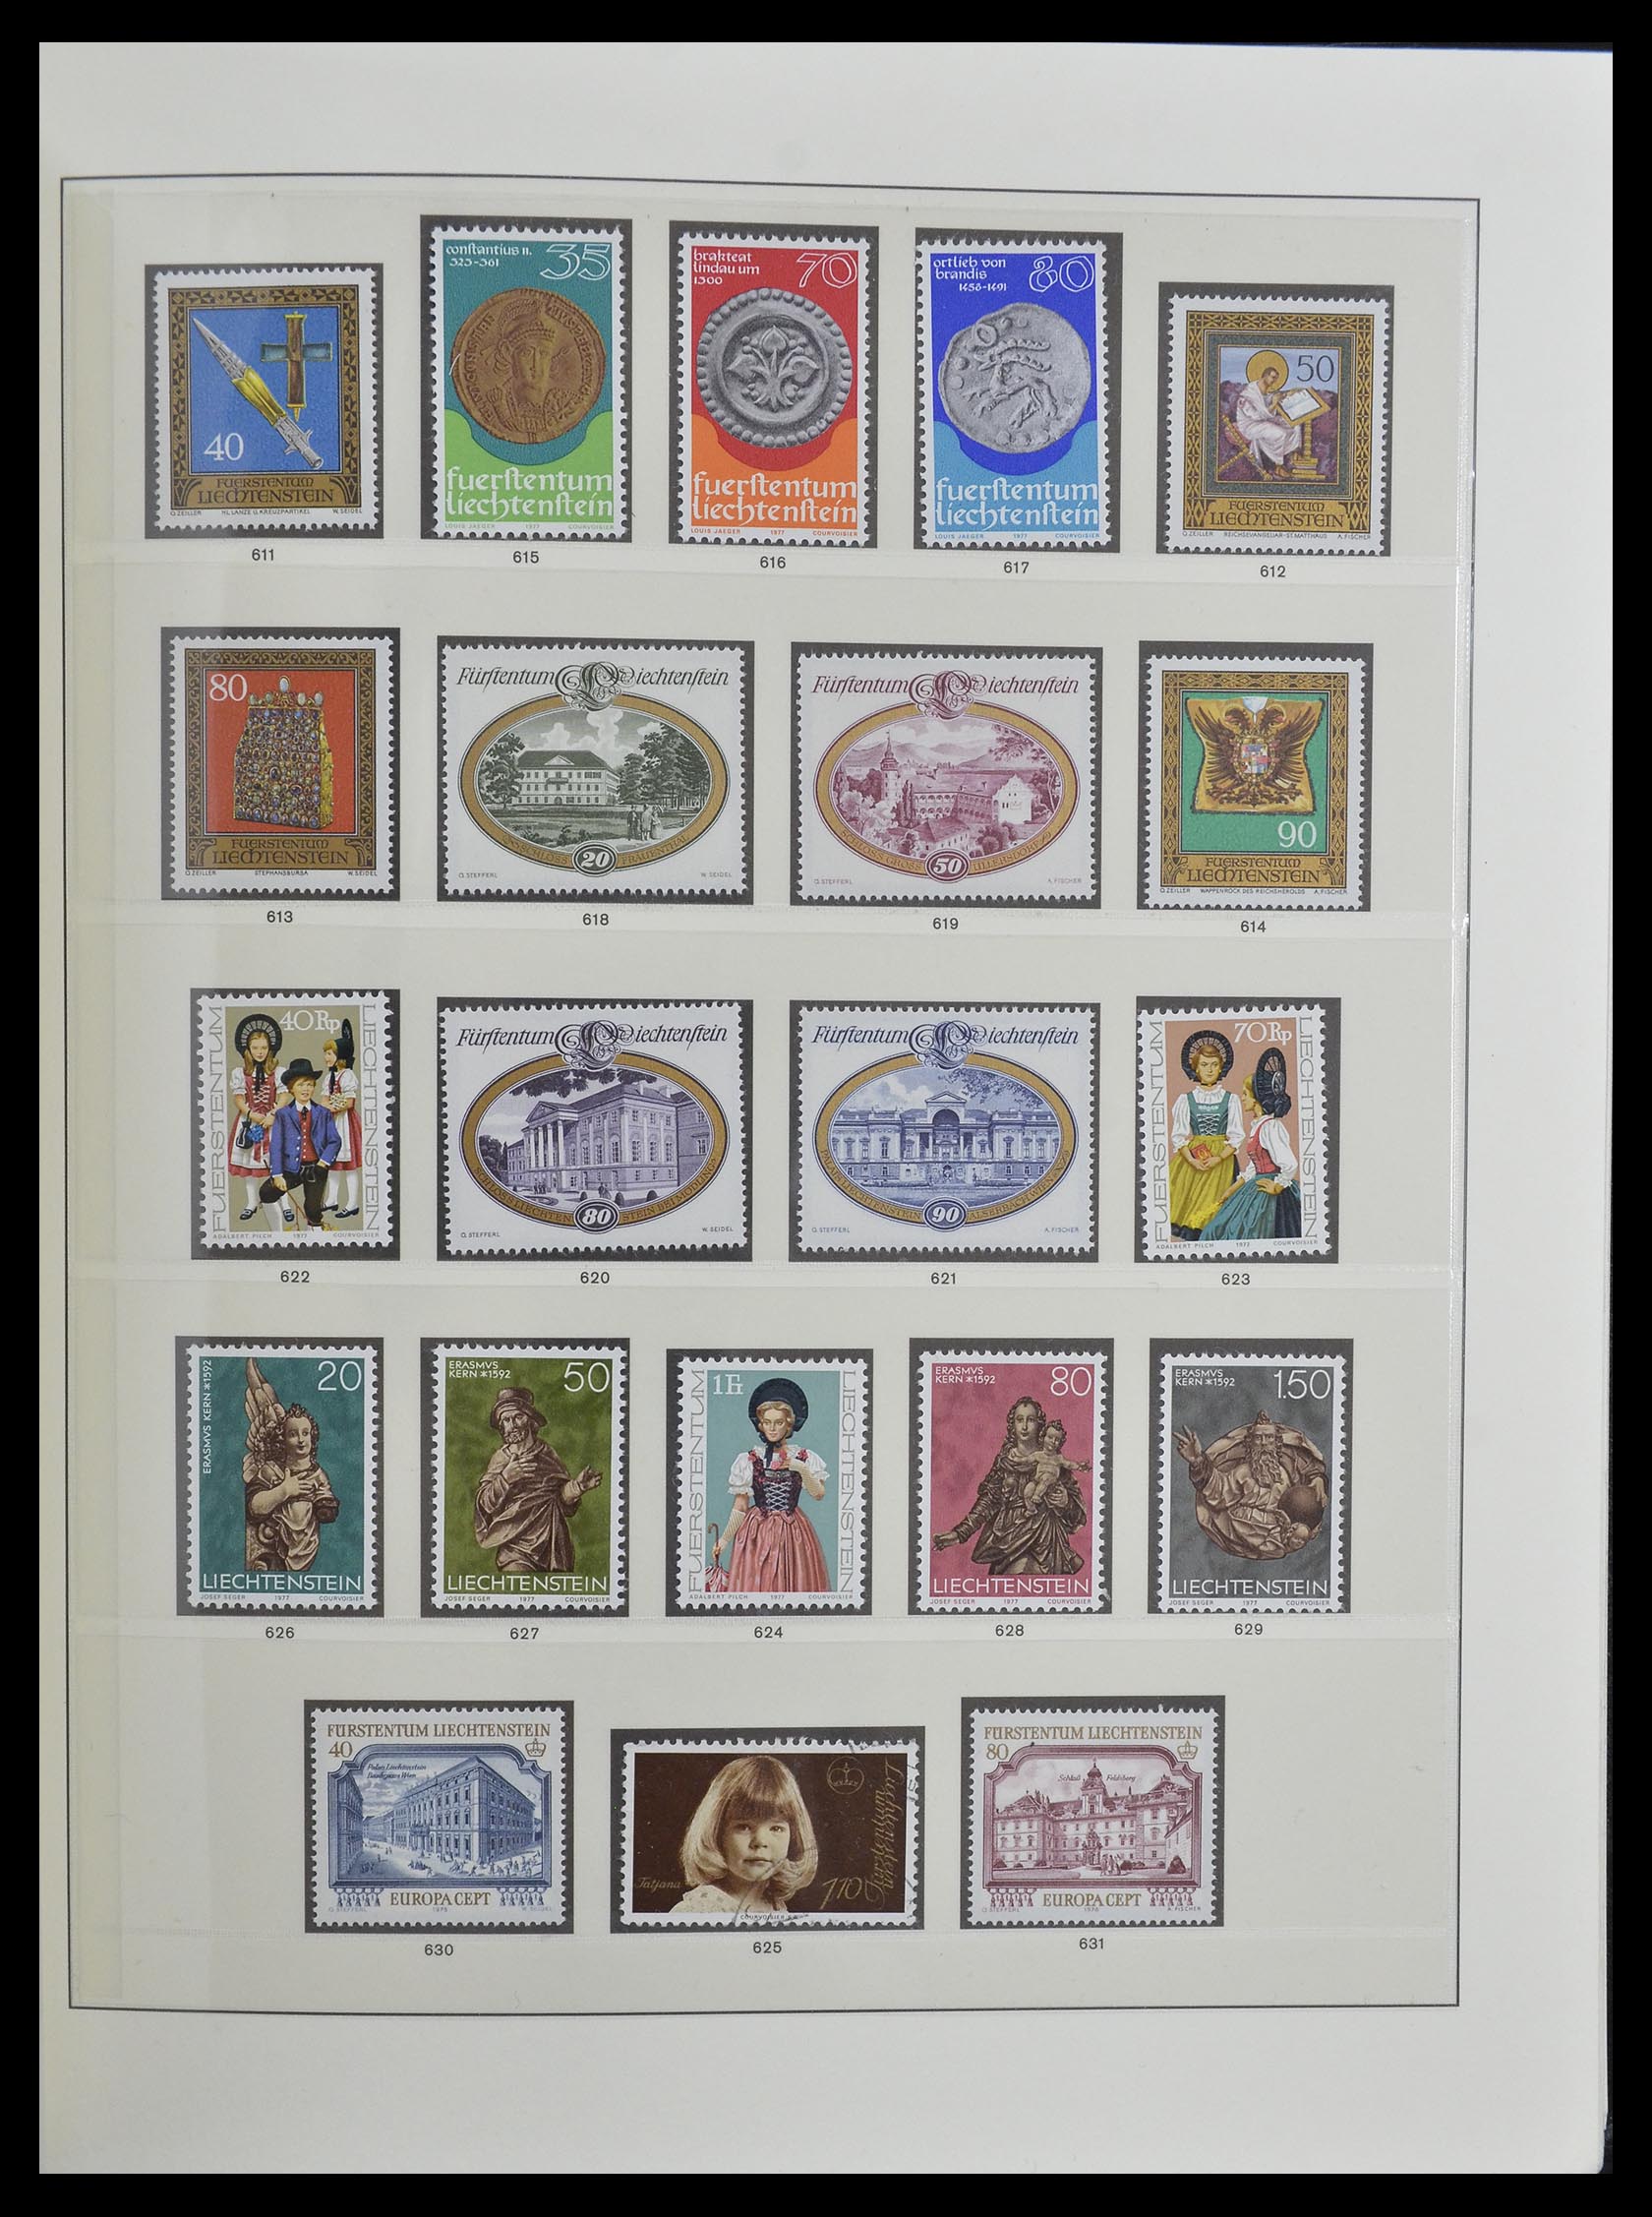 33140 031 - Stamp collection 33140 Liechtenstein 1912-1990.